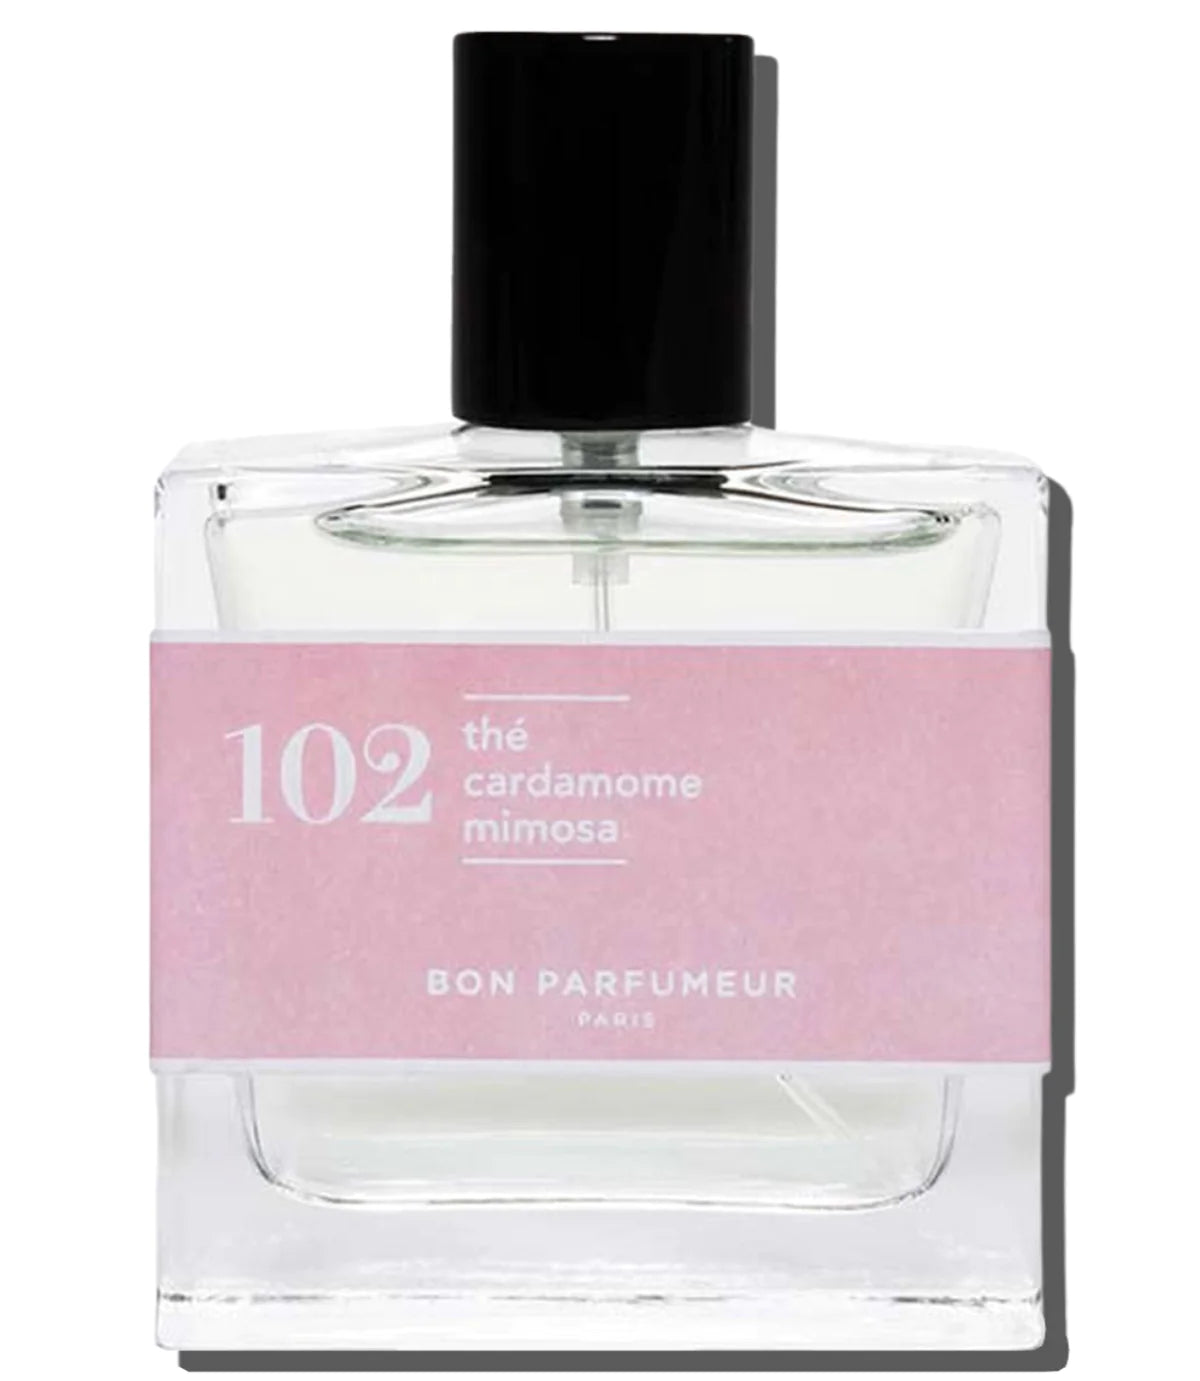 Bon Parfumeur, 101, floral, Tea, Cardamom, Mimosa